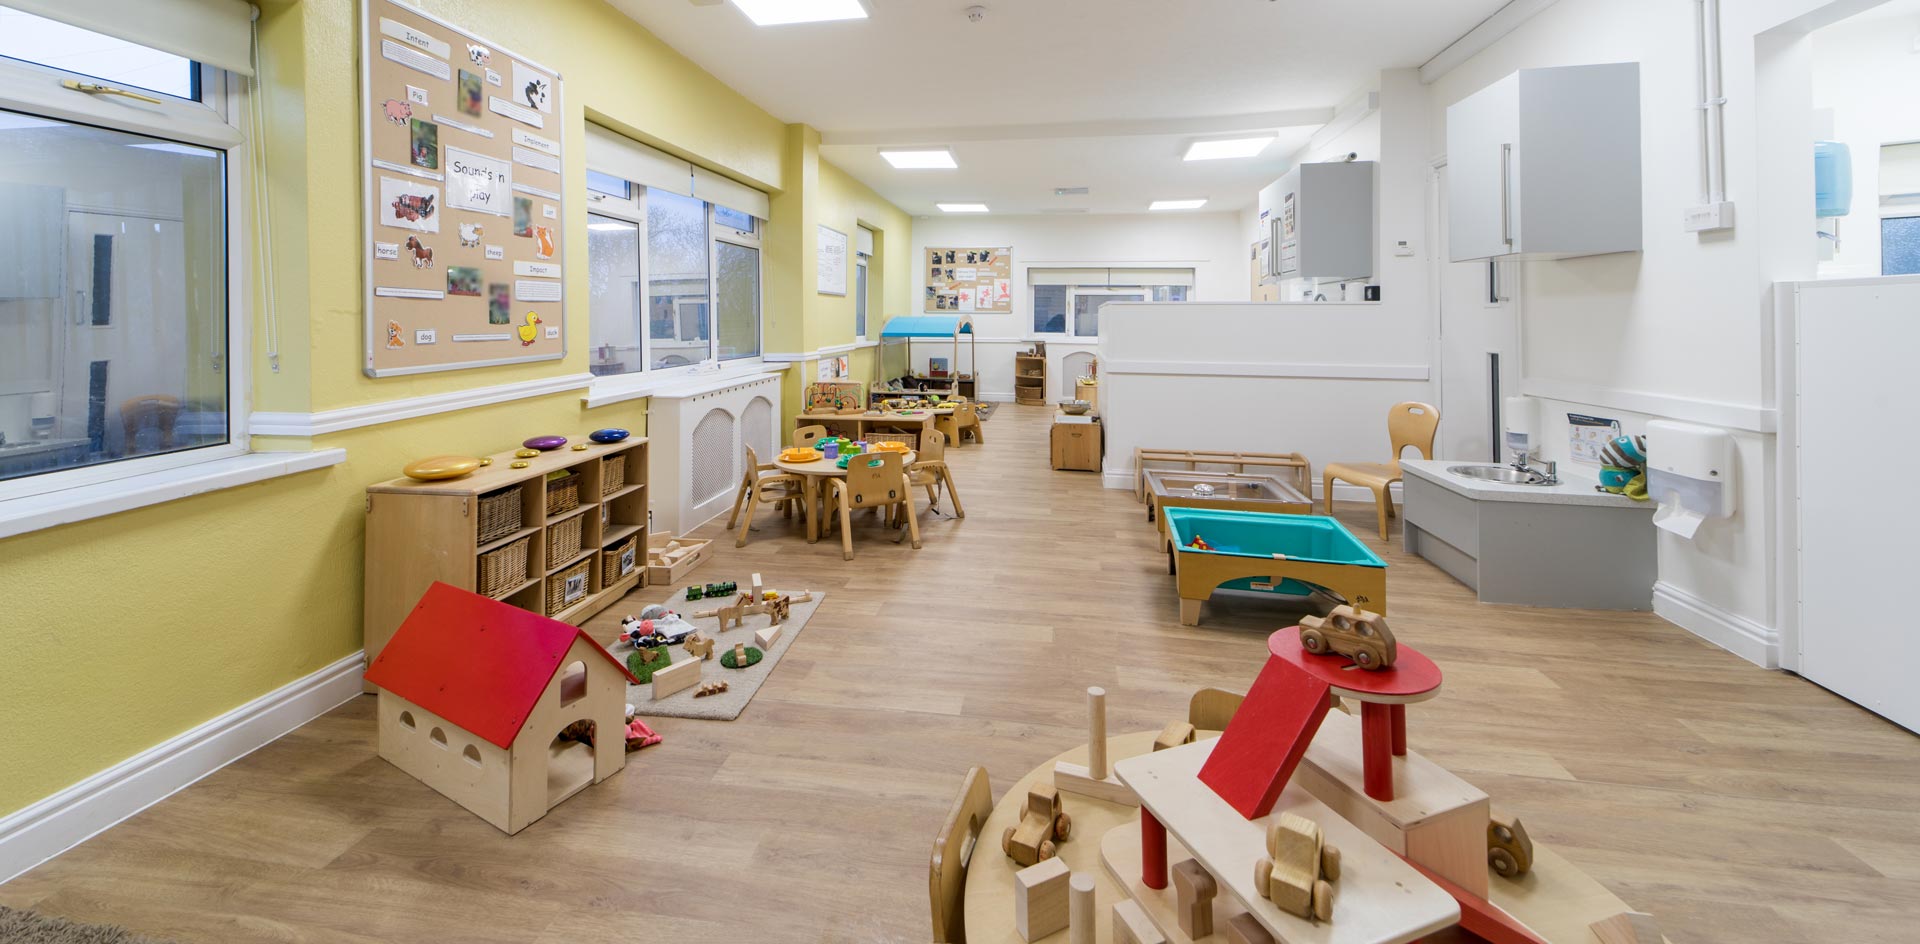 Court Oak Day Nursery and Preschool